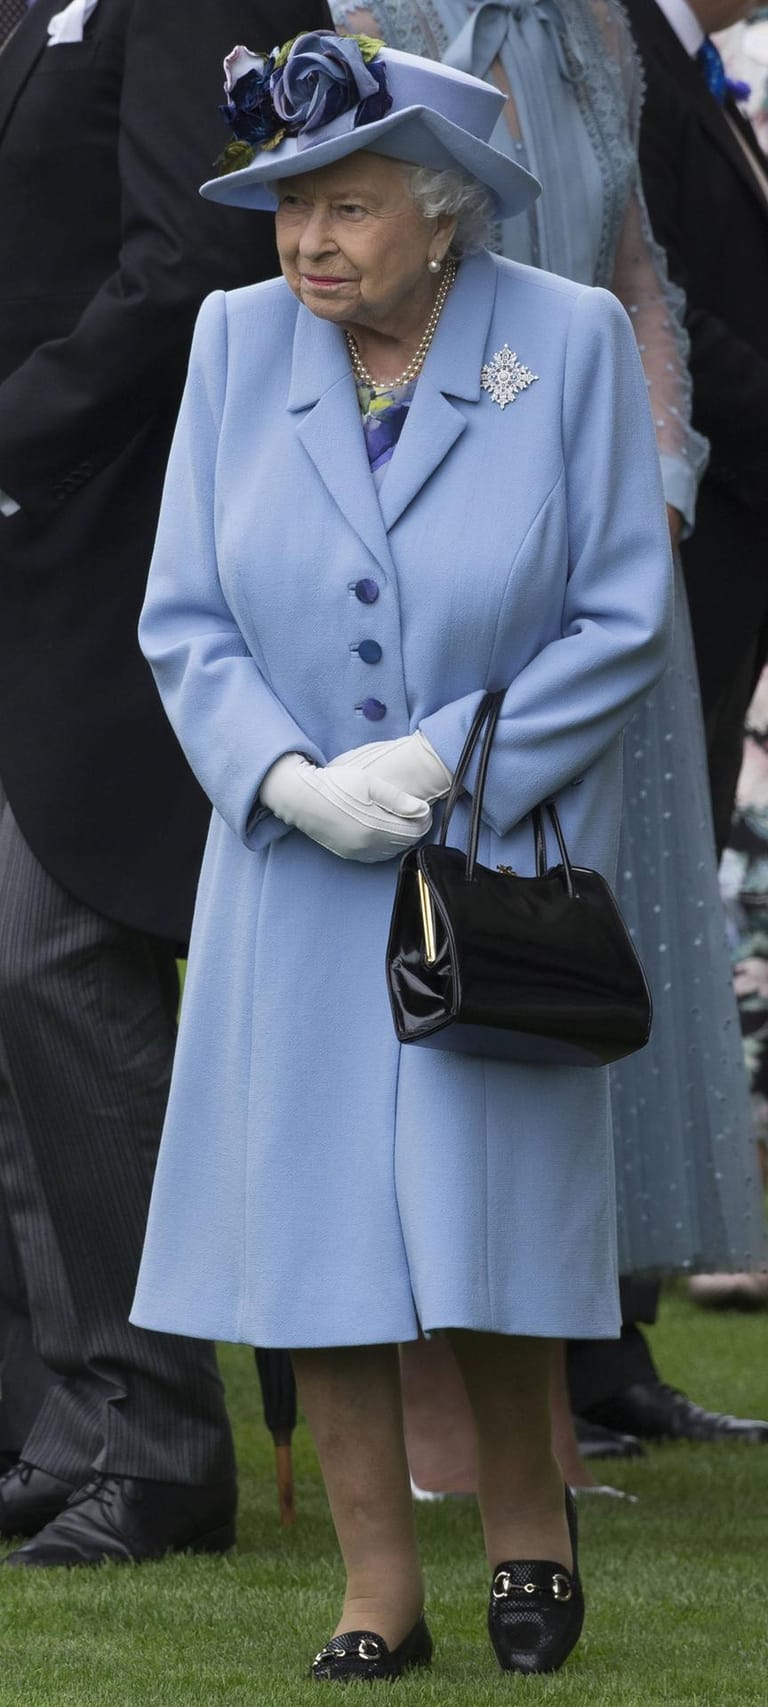 Königin Elizabeth II. kam zum Auftakt in einer hellblauen Kombi.